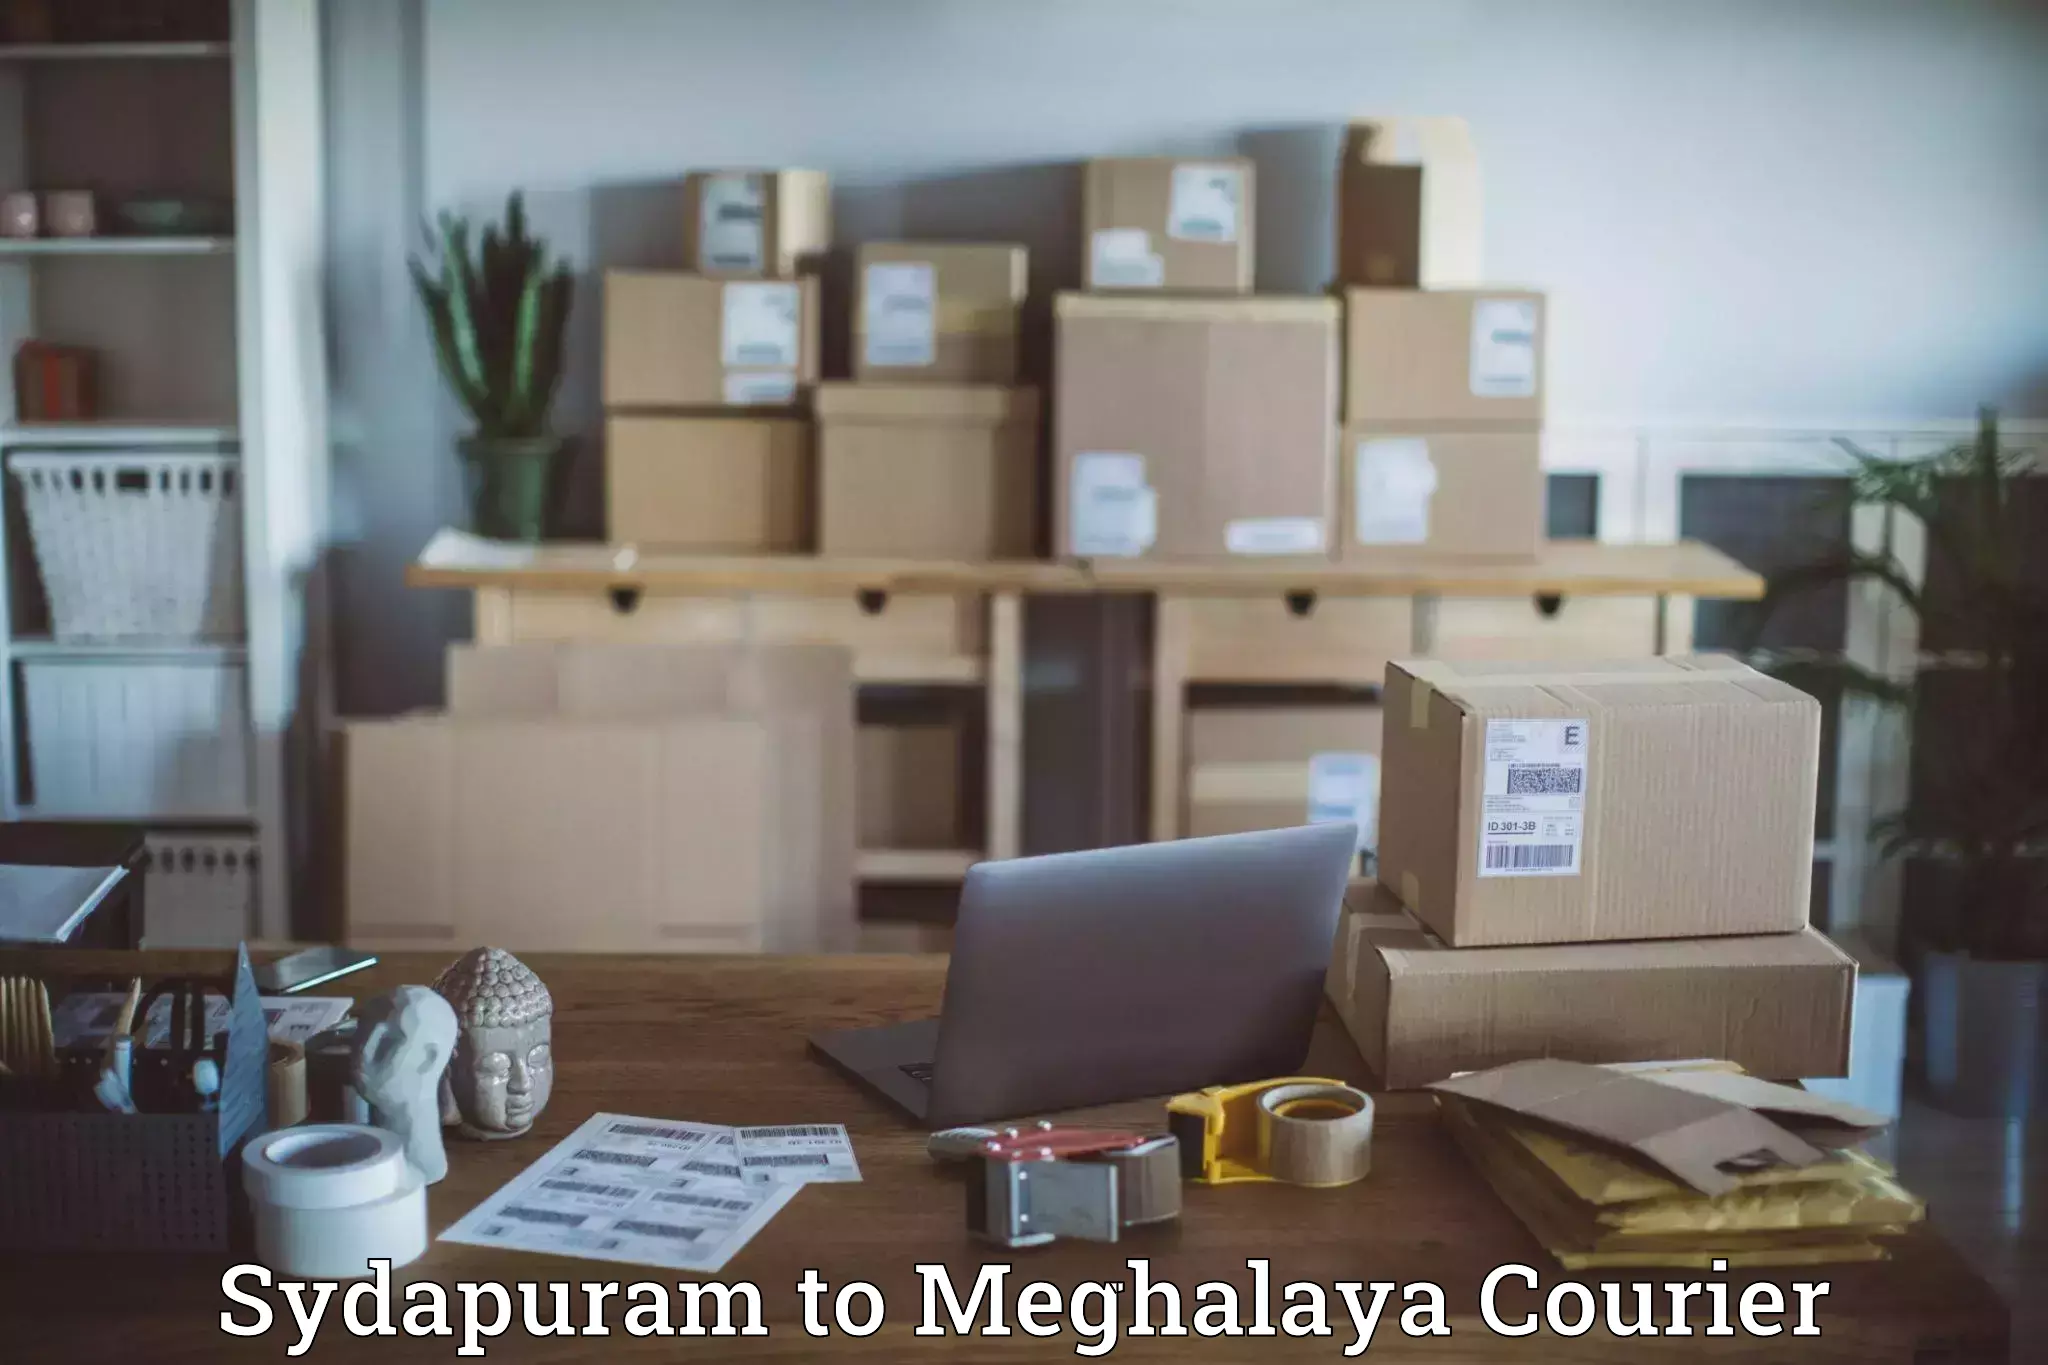 Premium courier services Sydapuram to Phulbari